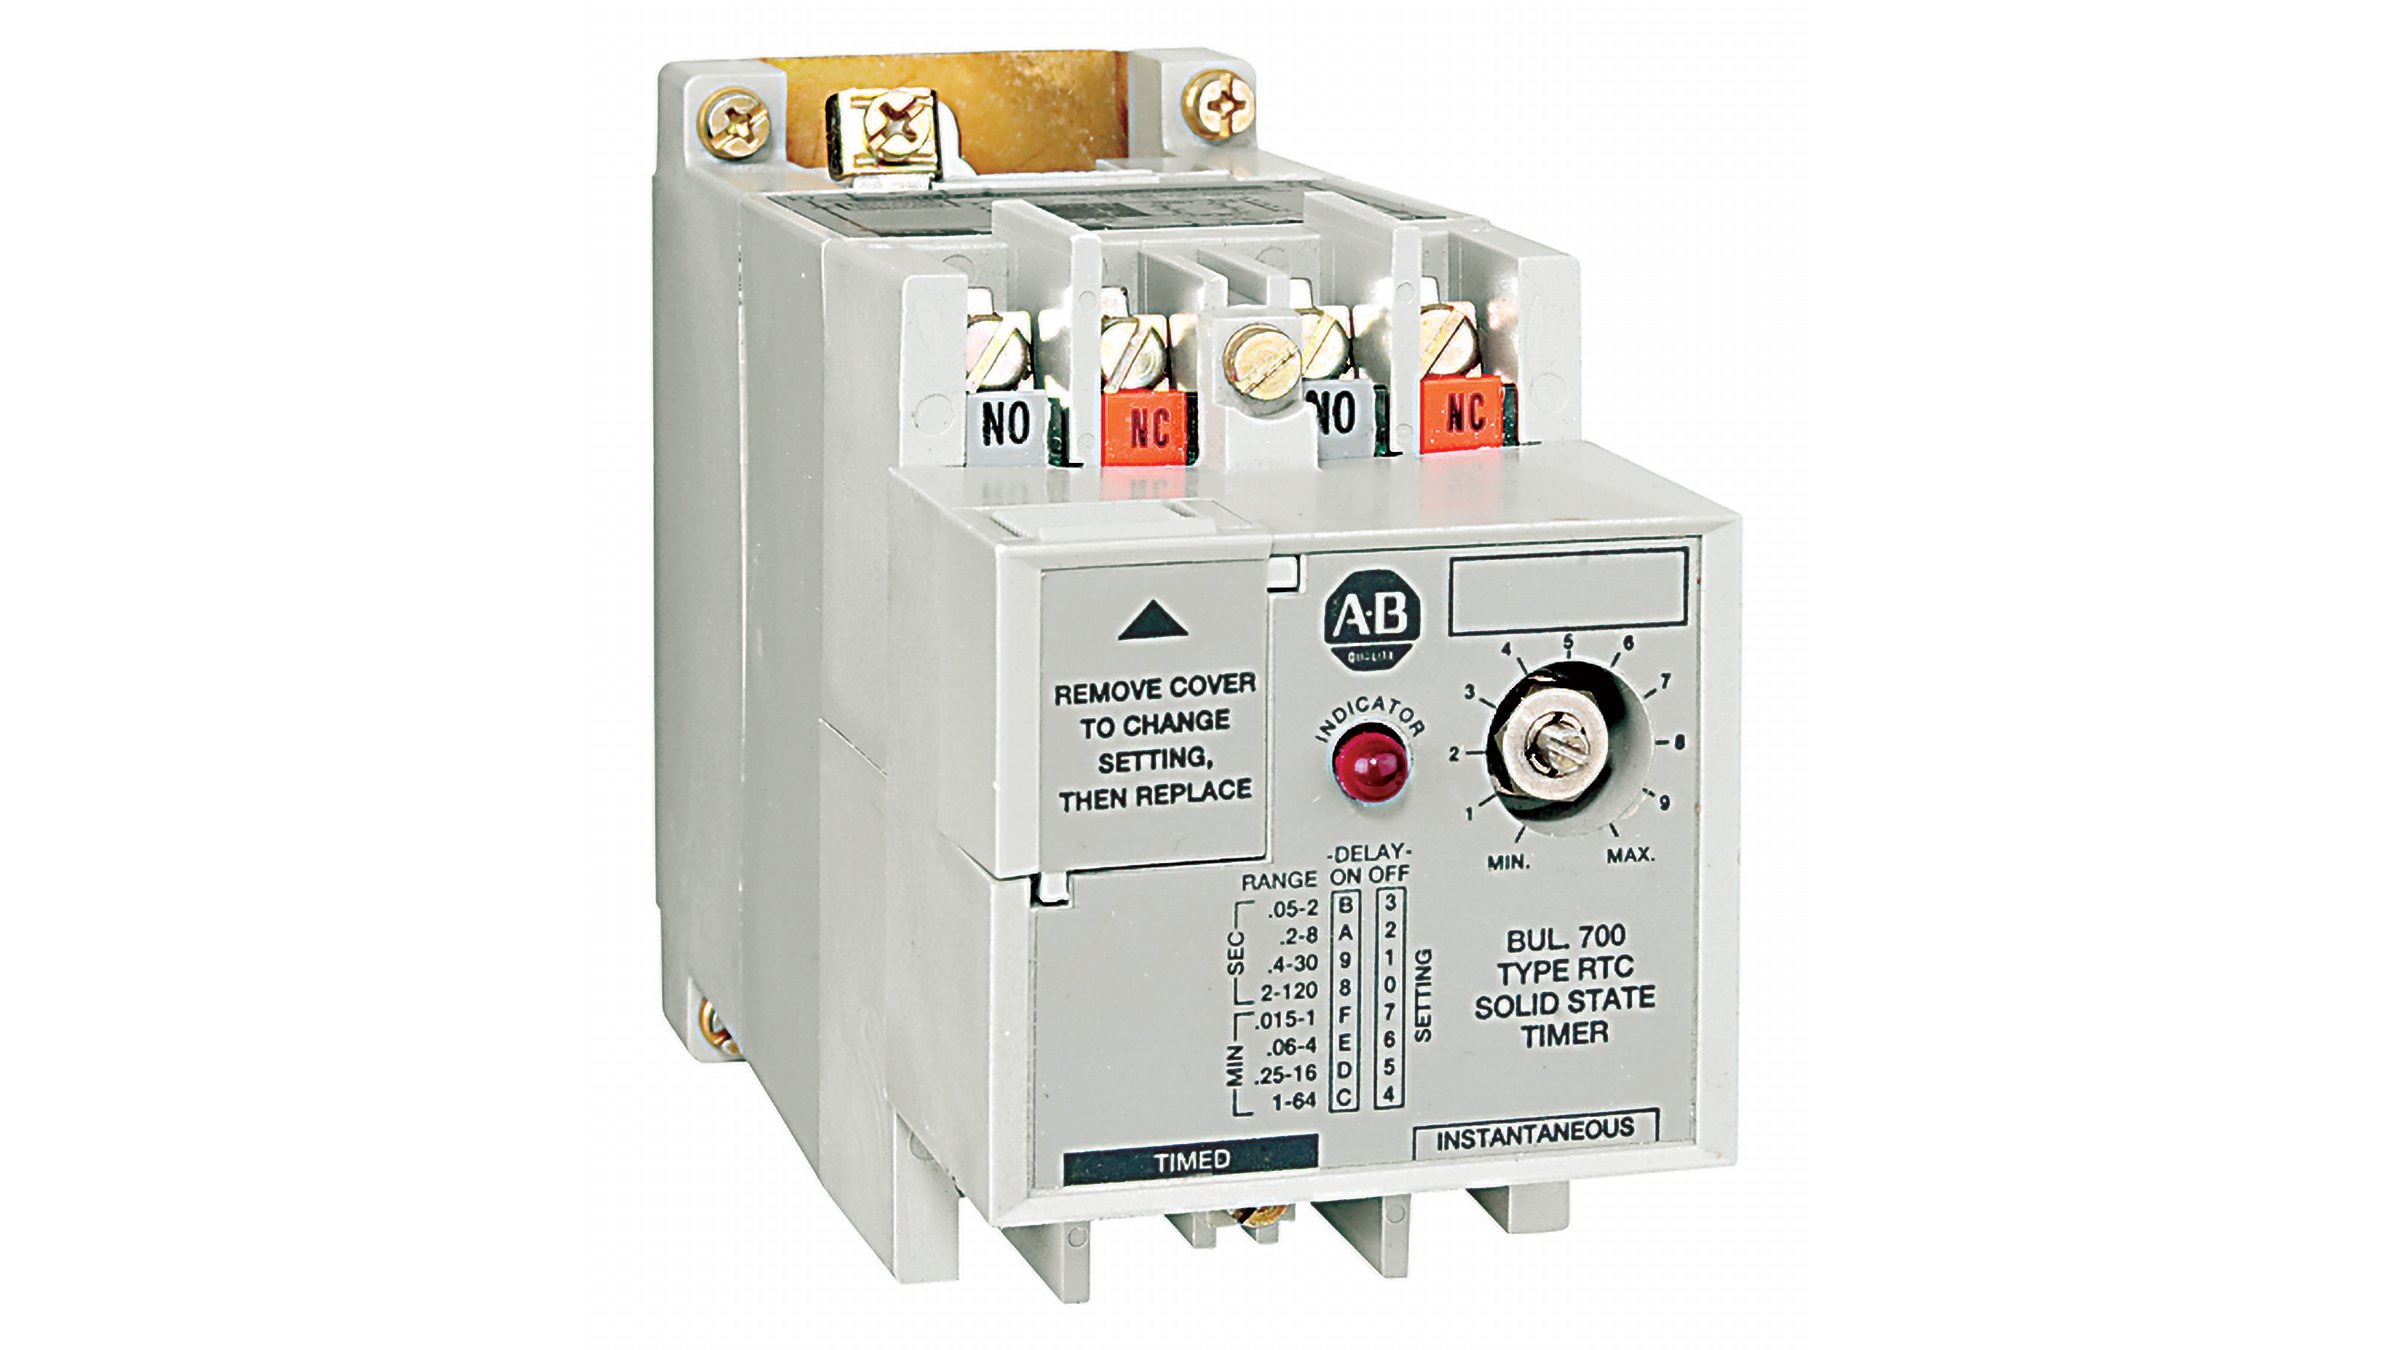 Les relais temporisés statiques Allen-Bradley, série 700-RTC sont des relais temporisés fixes conçus pour des applications nécessitant une temporisation spécifique dans laquelle les modifications de chronométrage par inadvertance doivent être évitées.